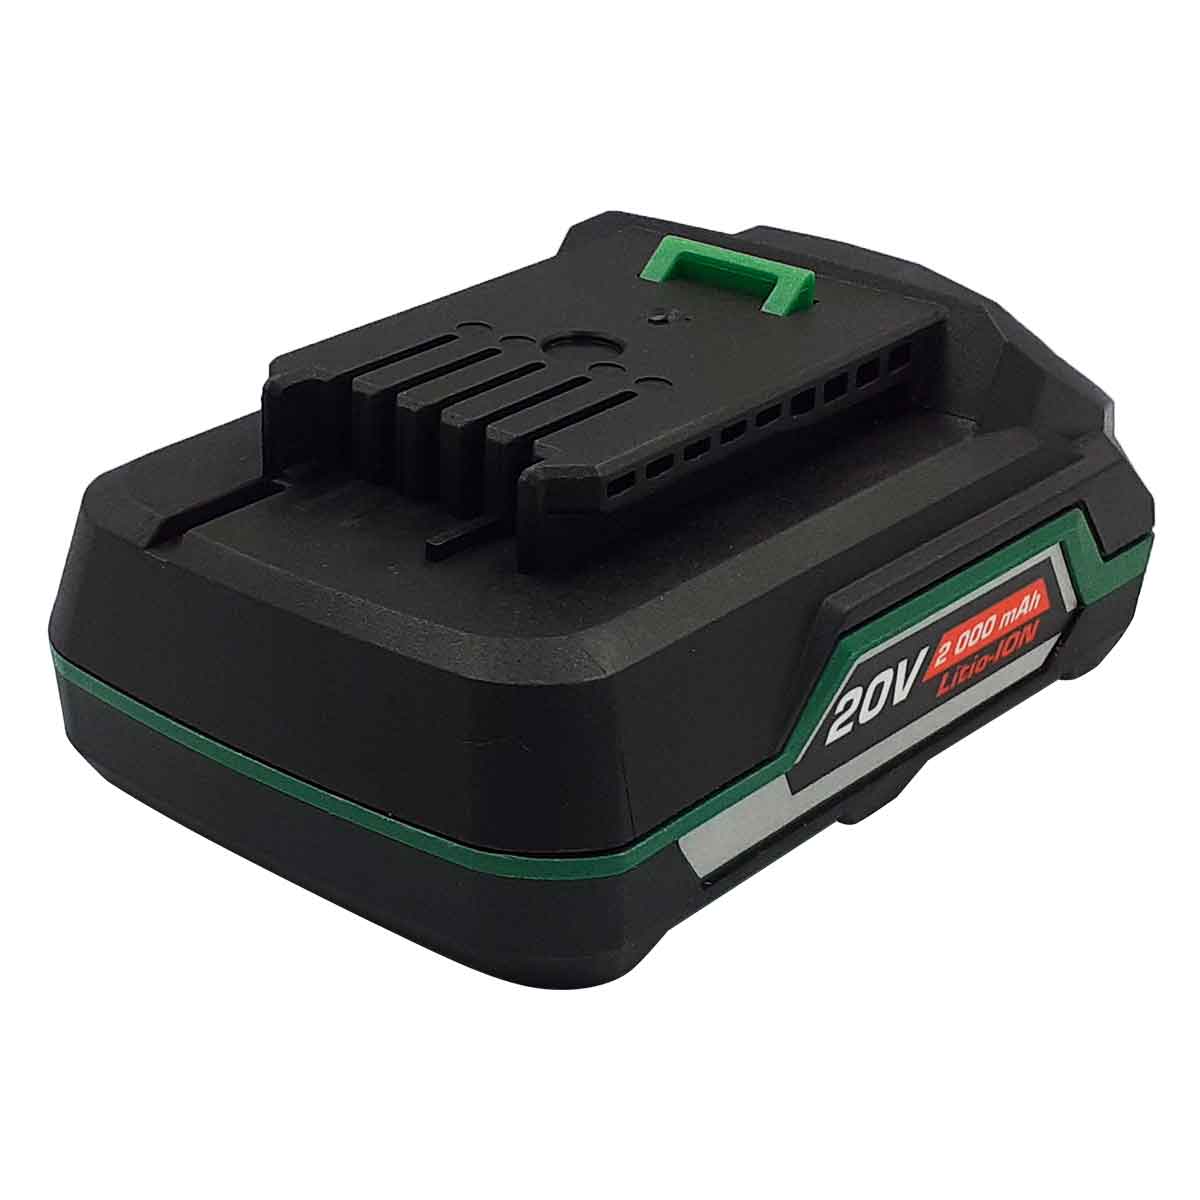 bateria recargable litio negro con verde lion tools ancho